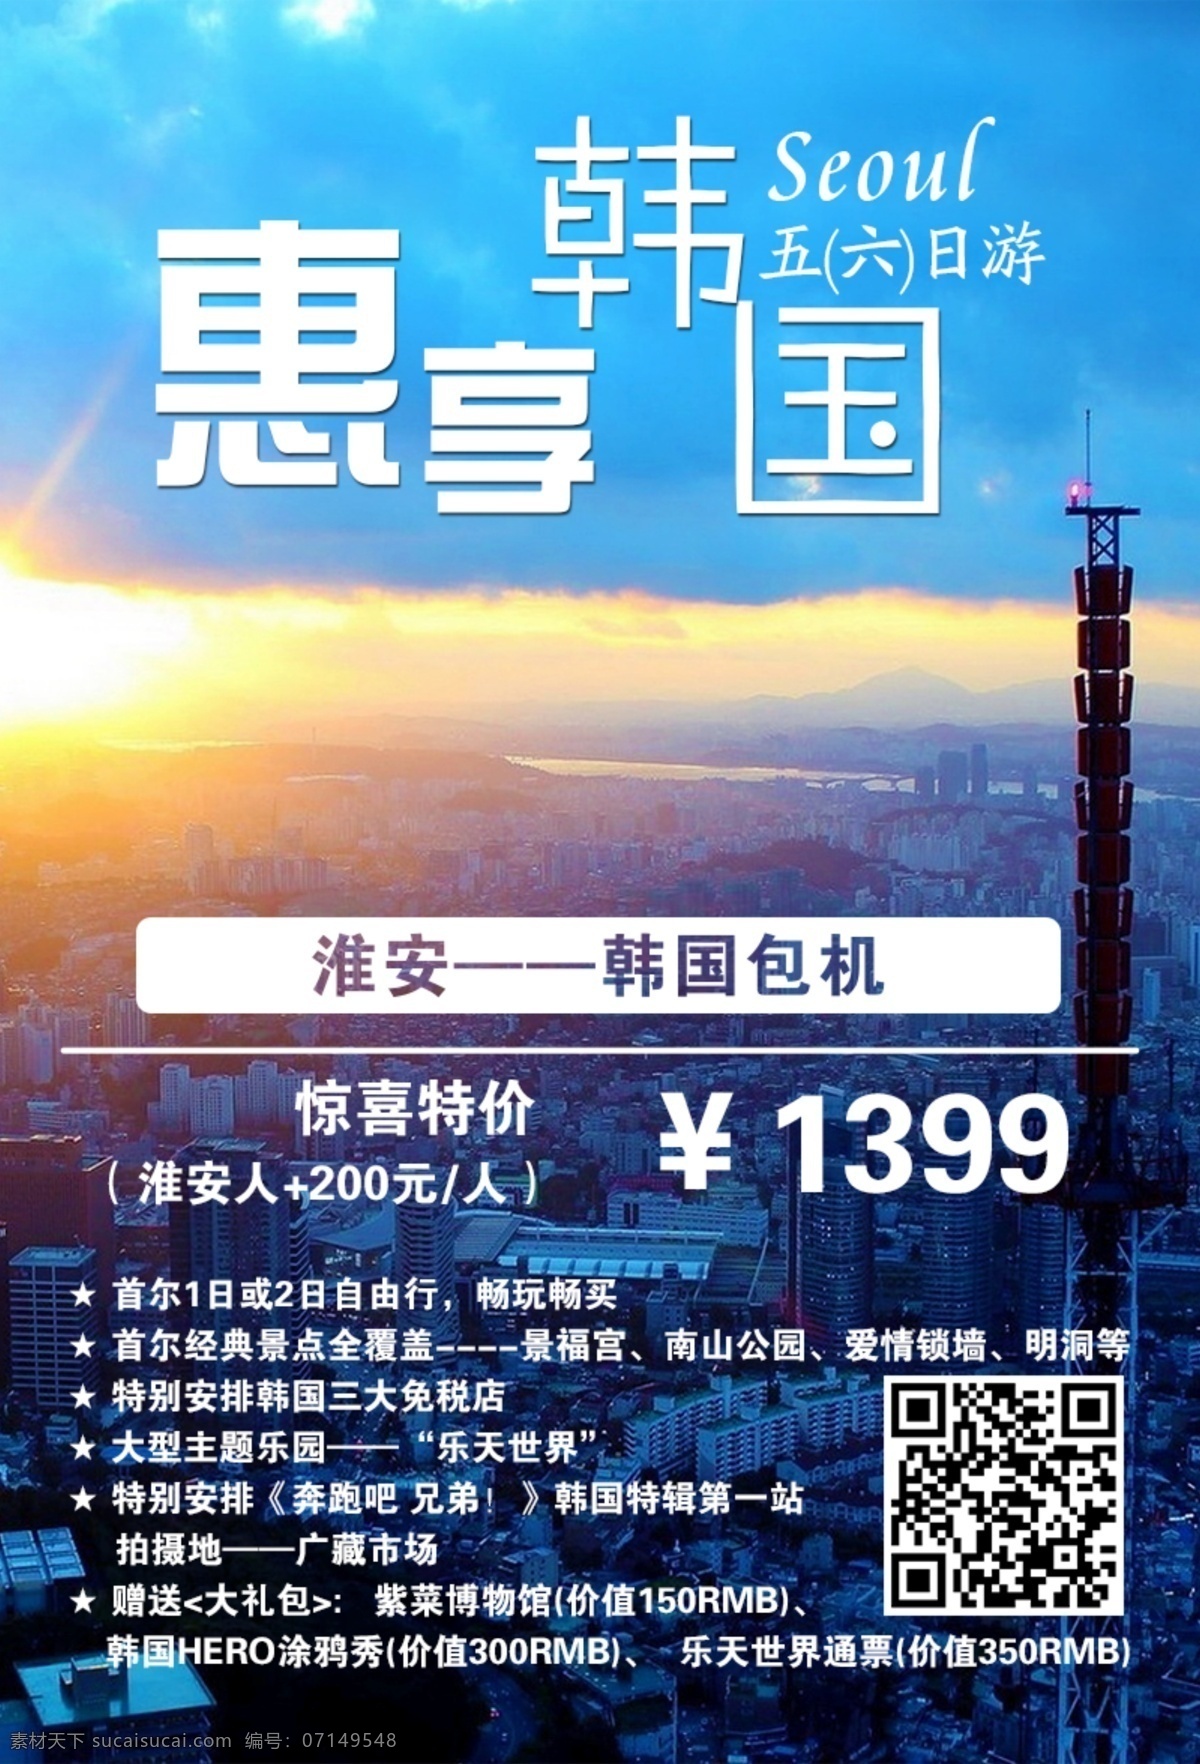 韩国旅游 海报 韩国 蓝色 旅游 首尔 首尔塔 特价 韩国首尔